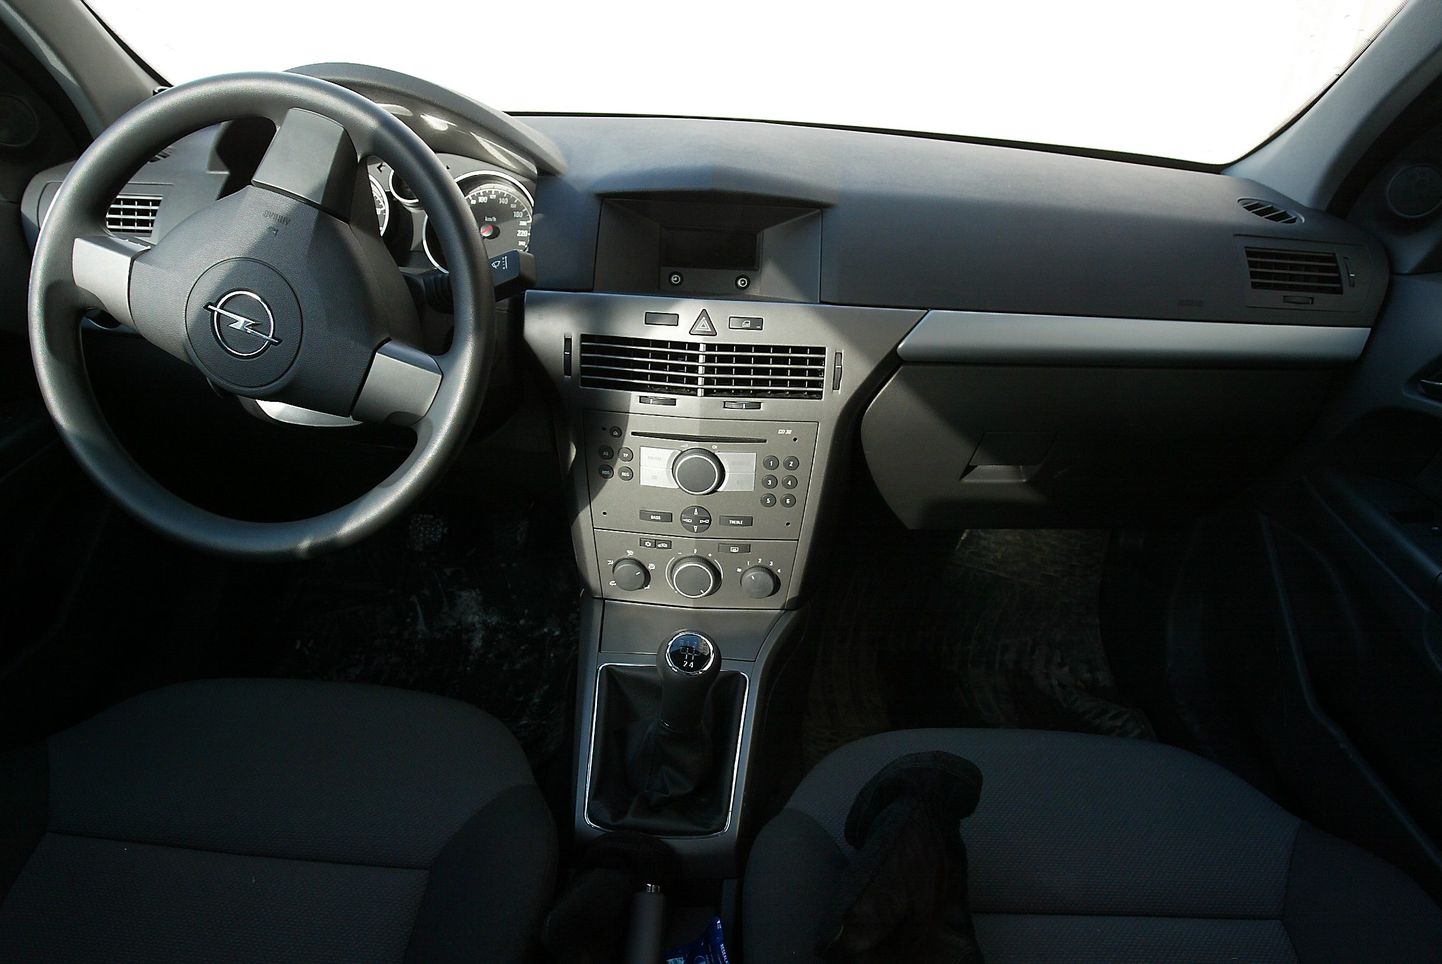 Ärandatud Opel Astraga tehti Tartus lustisõitu. Pilt on illustratiivne.